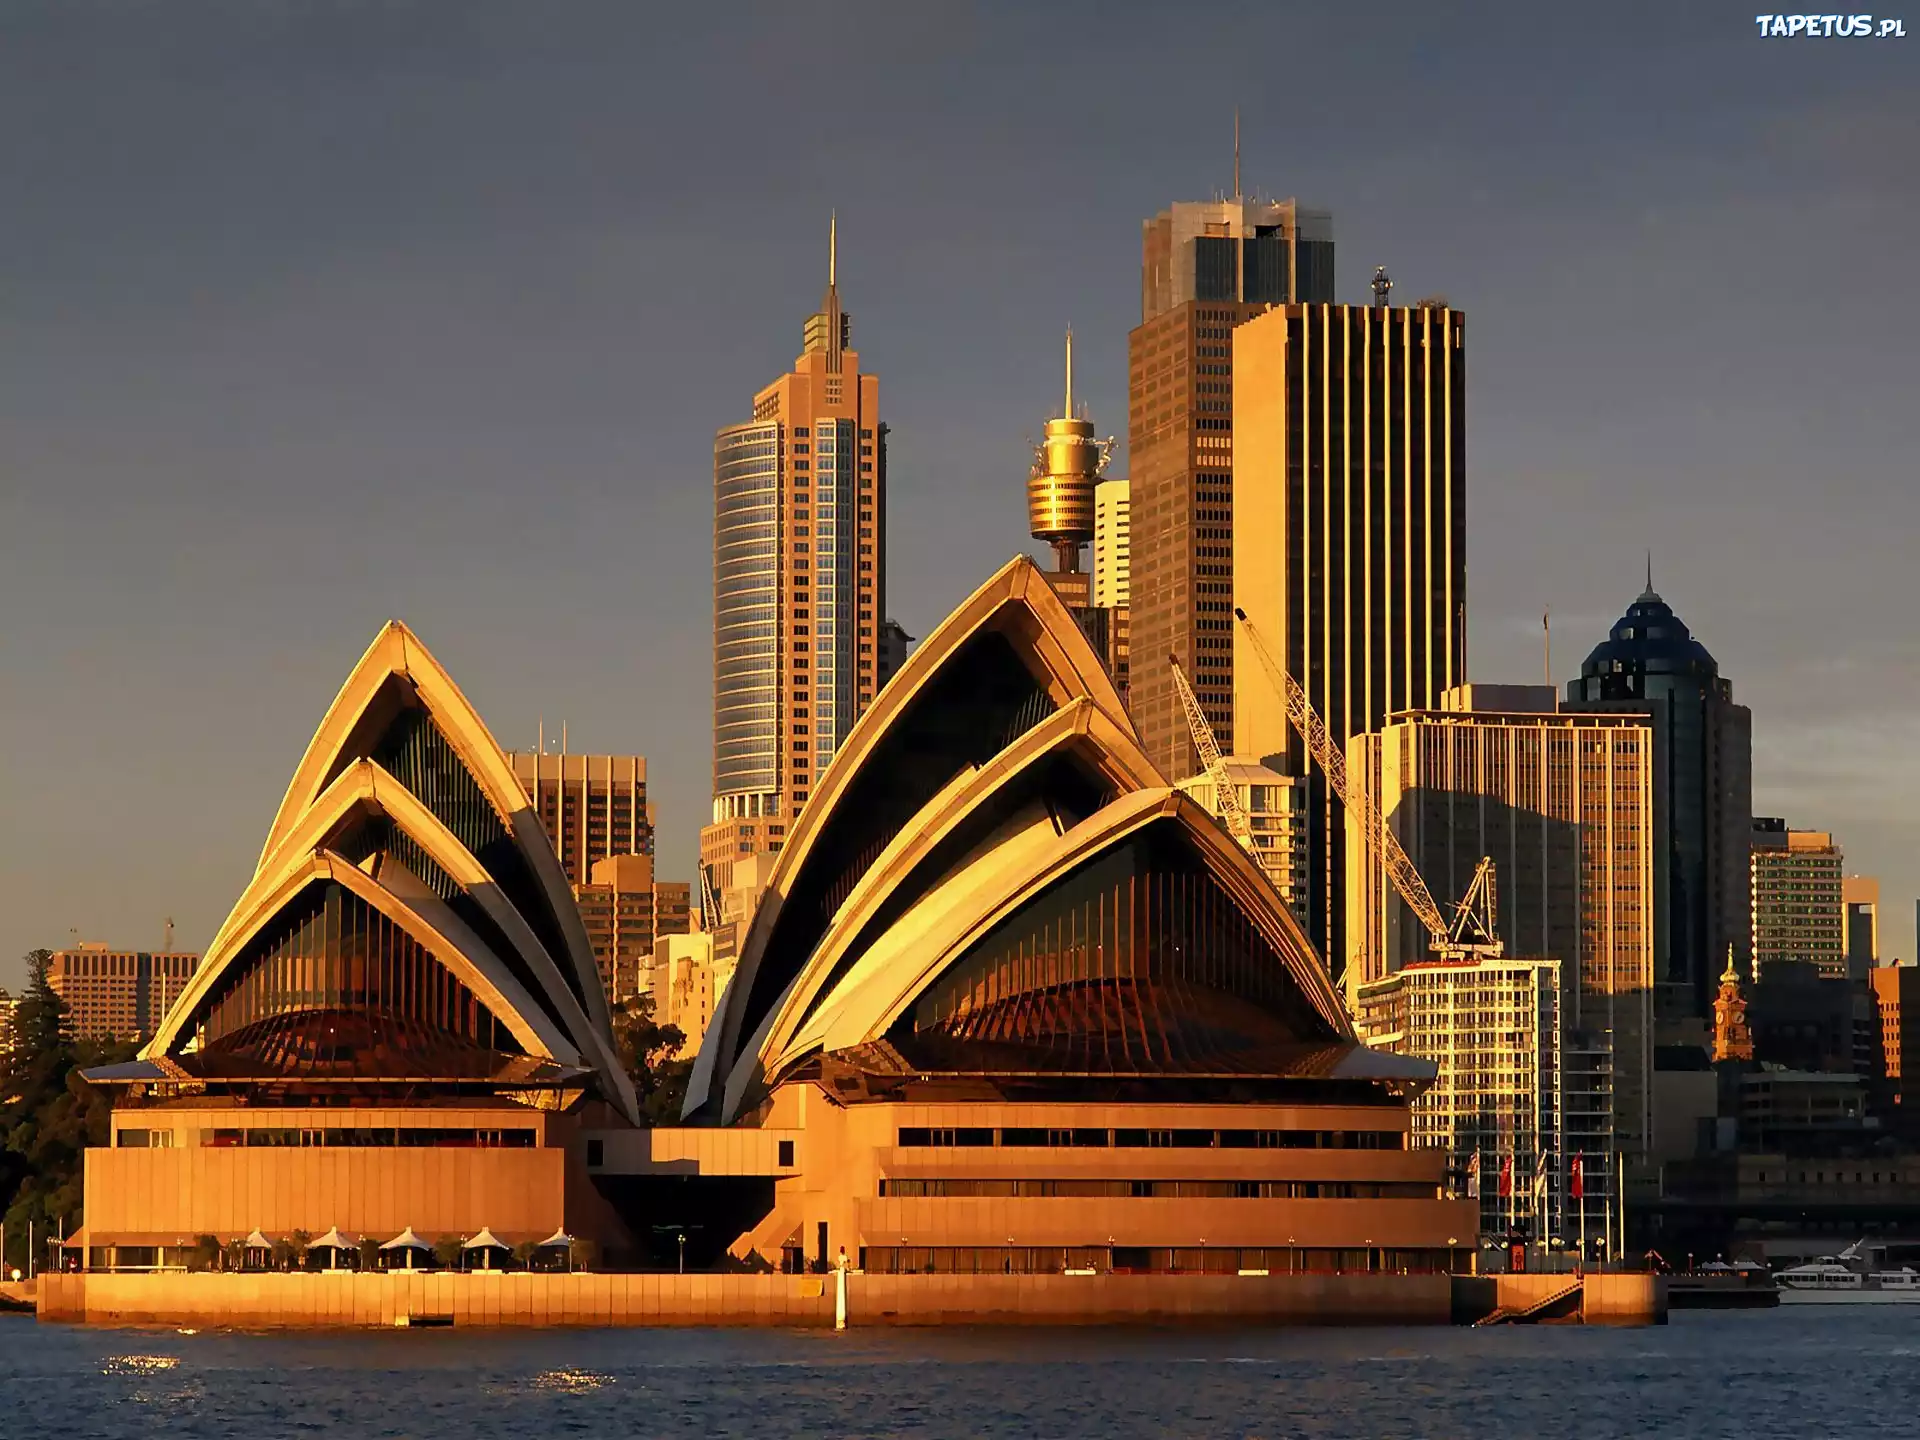 Австралия. Сиднейский оперный театр Австралия. Сиднейский оперный театр- г.Сидней (Австралия). Сидней столица Австралии достопримечательности. Сидней опера Хаус.